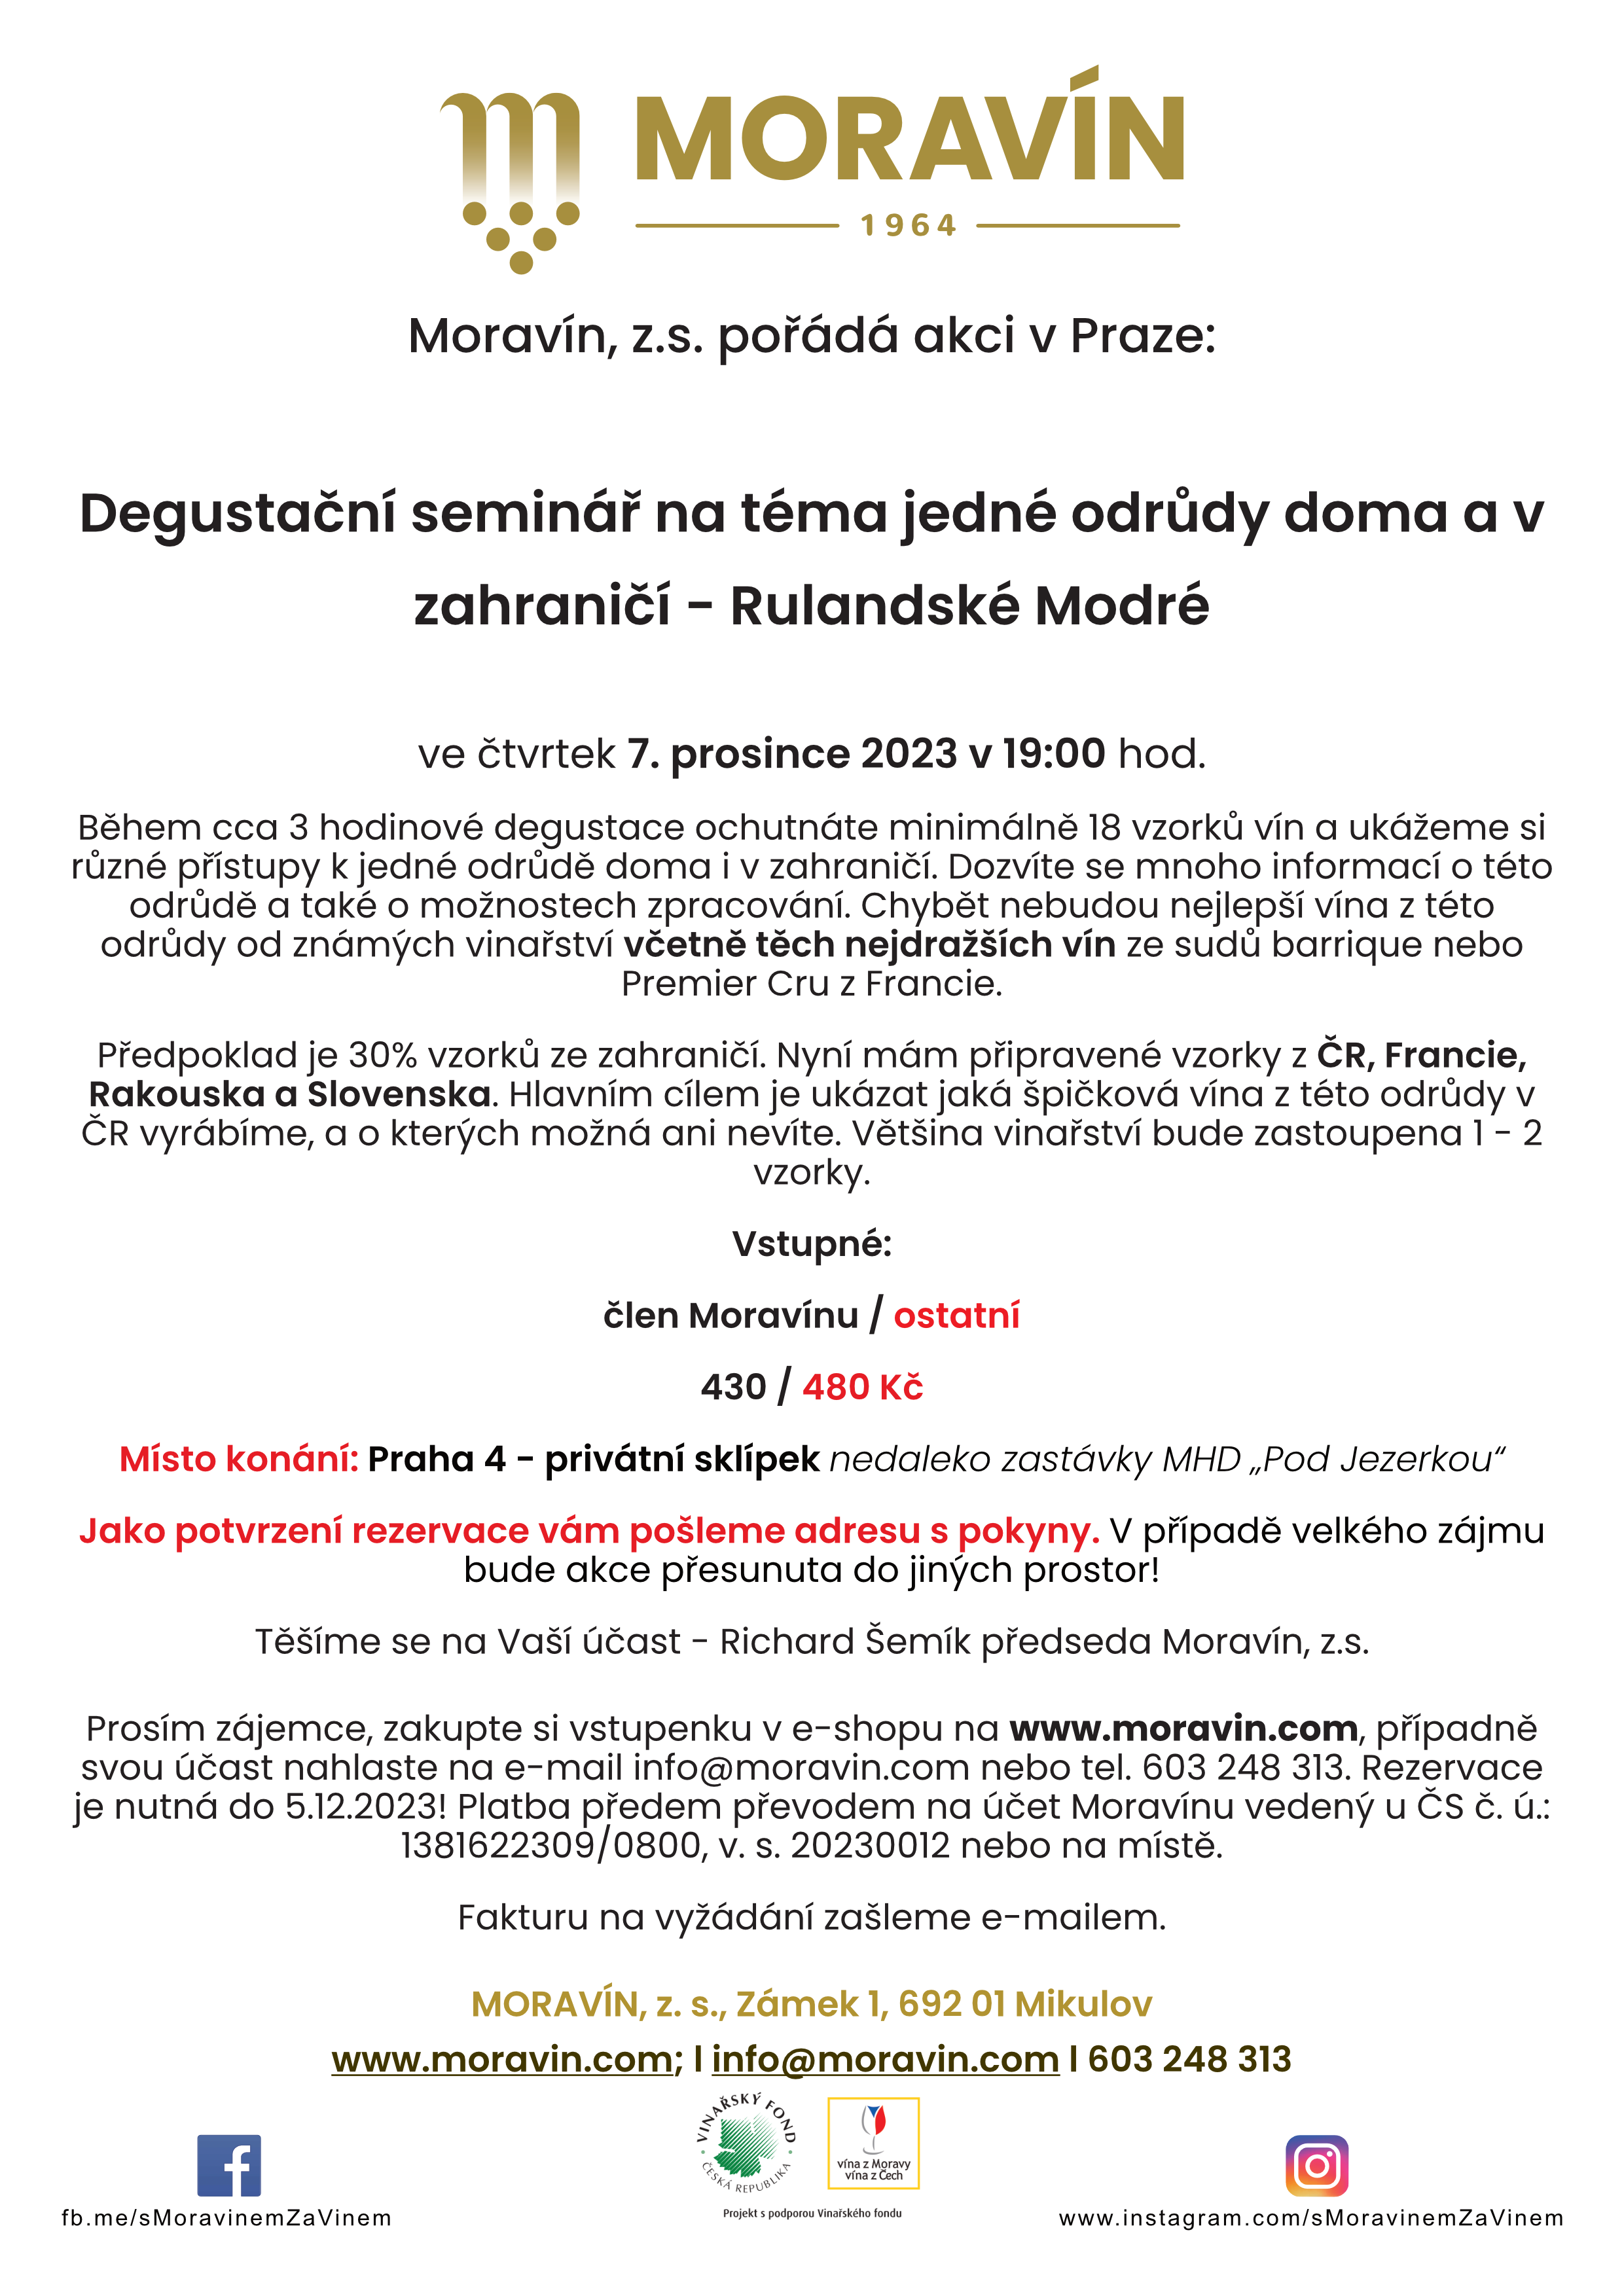 Degustační seminář na téma jedné odrůdy doma a v zahraničí - Rulandské modré | Praha 4 | 7. 12. 2023